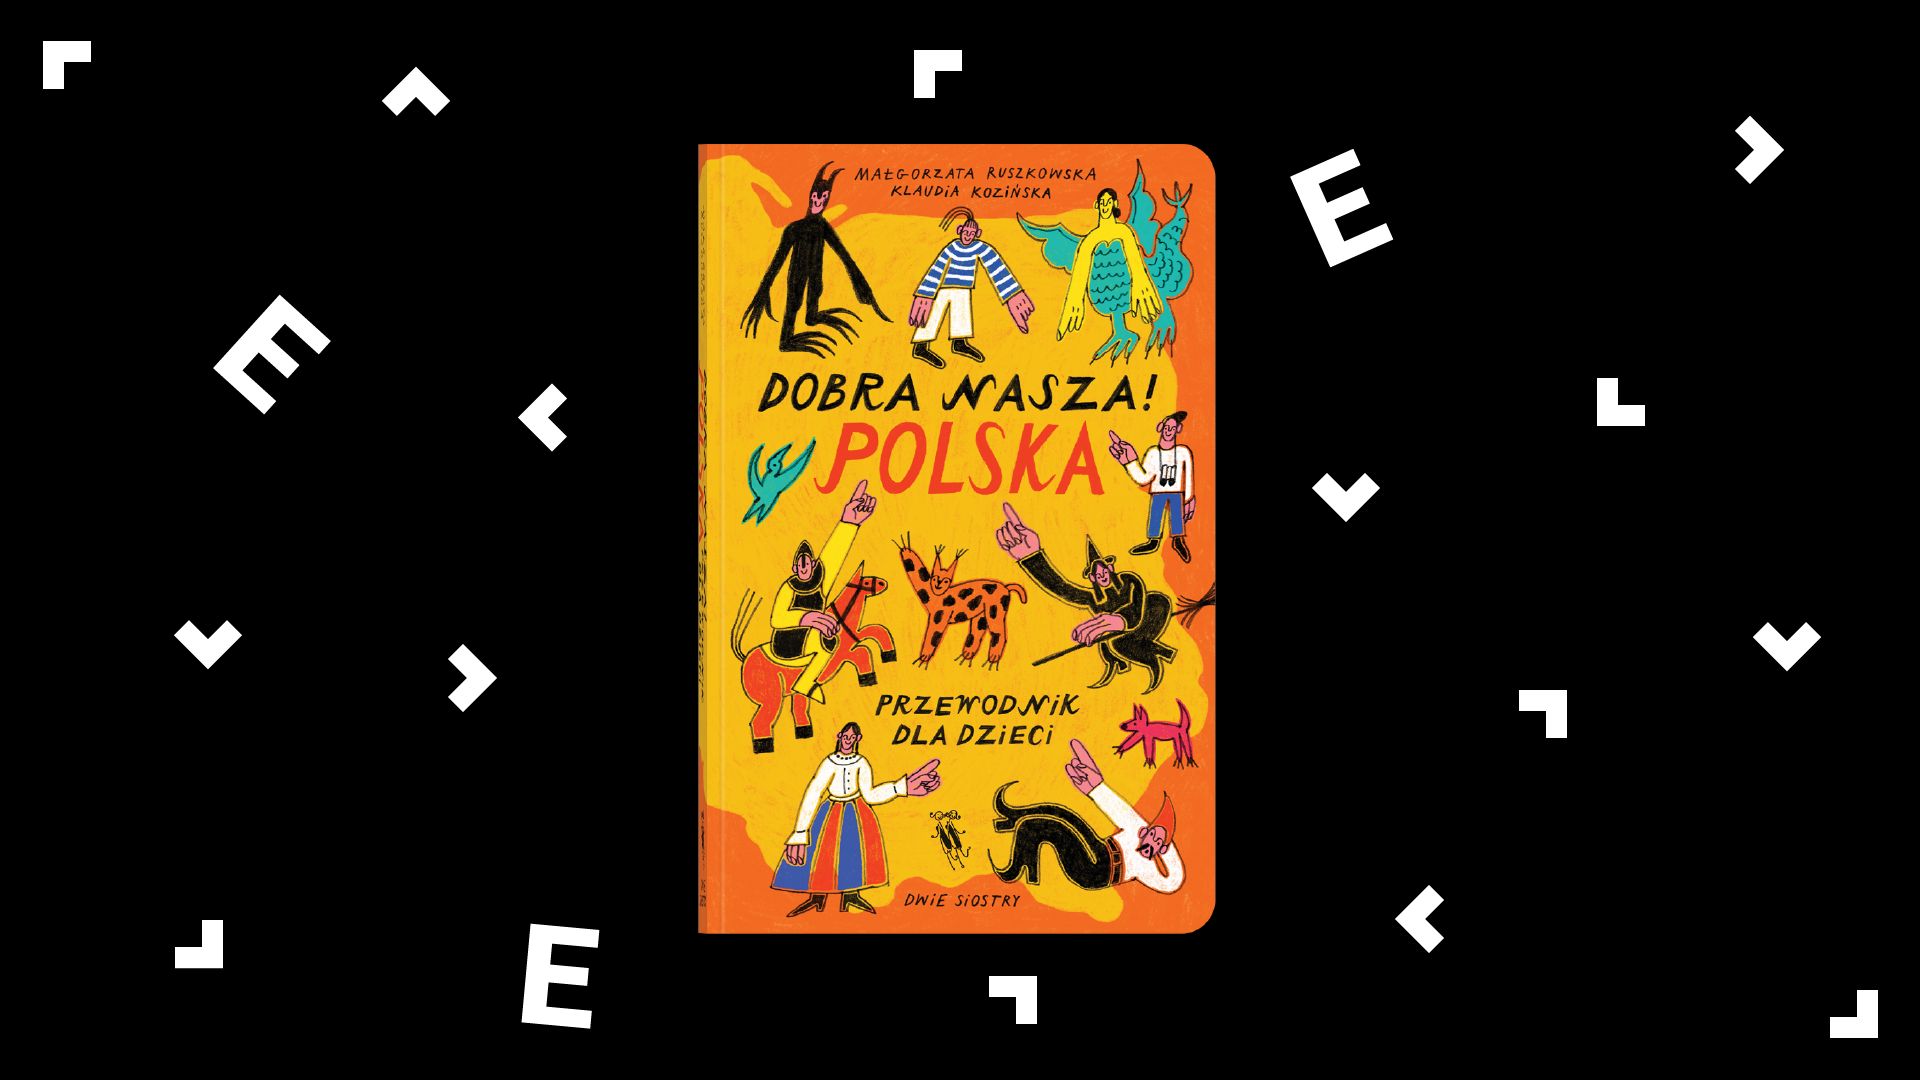 Okładka książki "Dobra nasza! Polska. Przewodnik dla dzieci". Na okładce znajdują się różne postacie, ludzie i istoty mitologiczne, które wskazują palcami na tytuł.